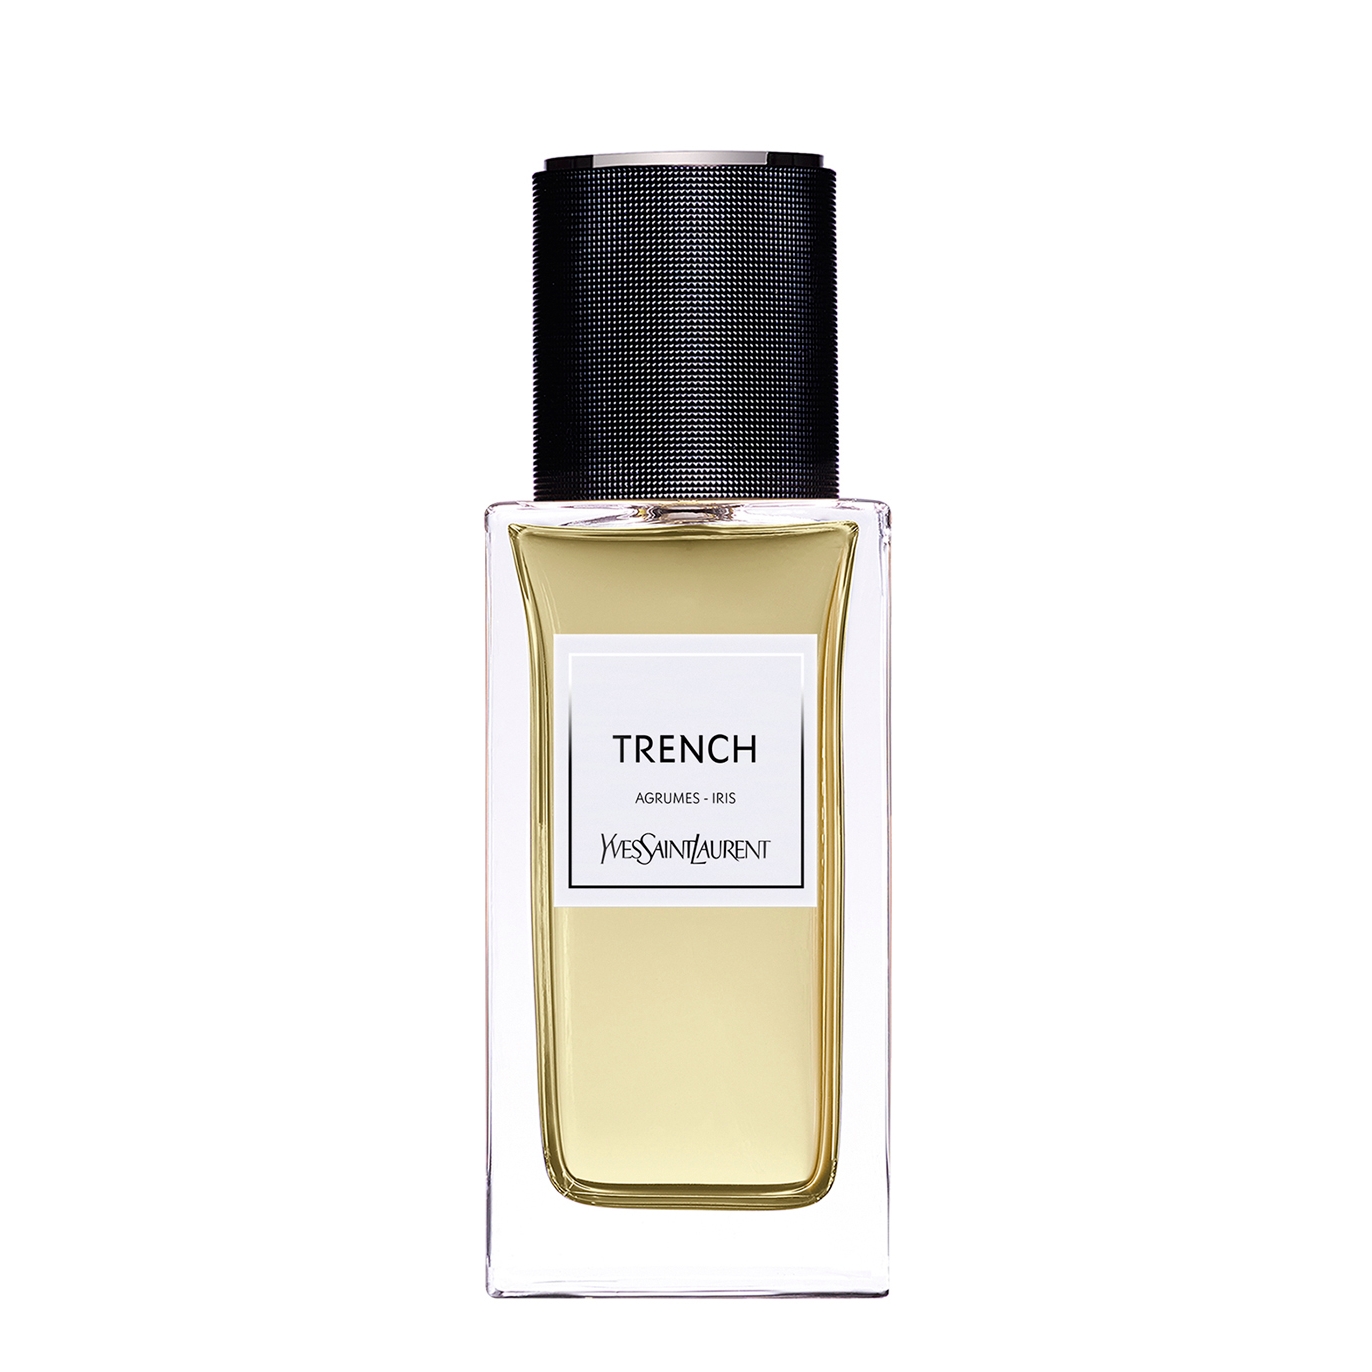 Yves Saint Laurent Le Vestiaire Des Parfums - Trench Eau De Parfum 125ml